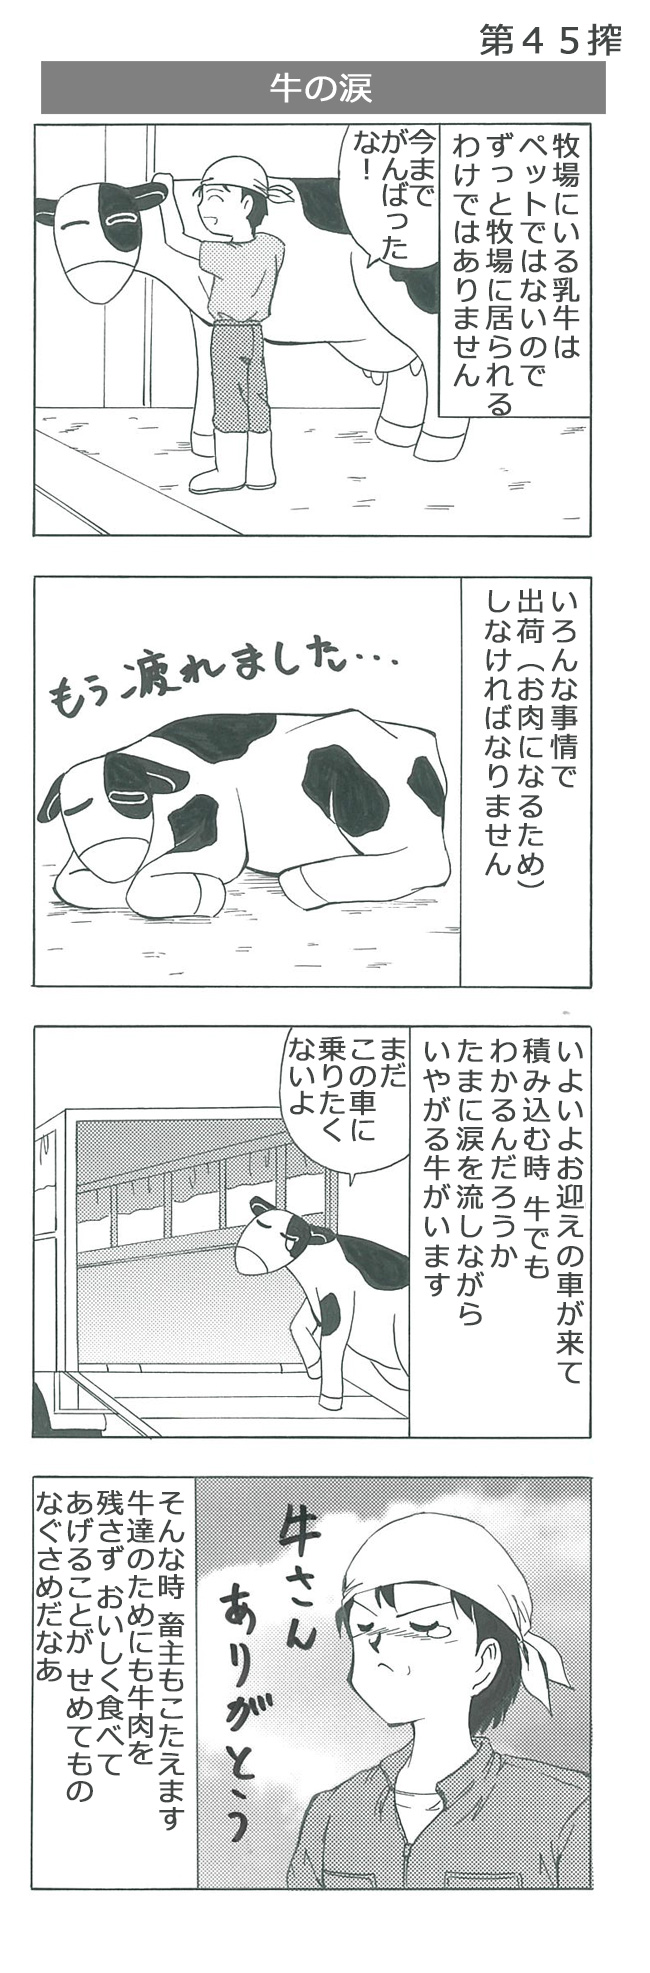 牛の涙 4コマ漫画 酪農家が自ら描いたリアリティ漫画